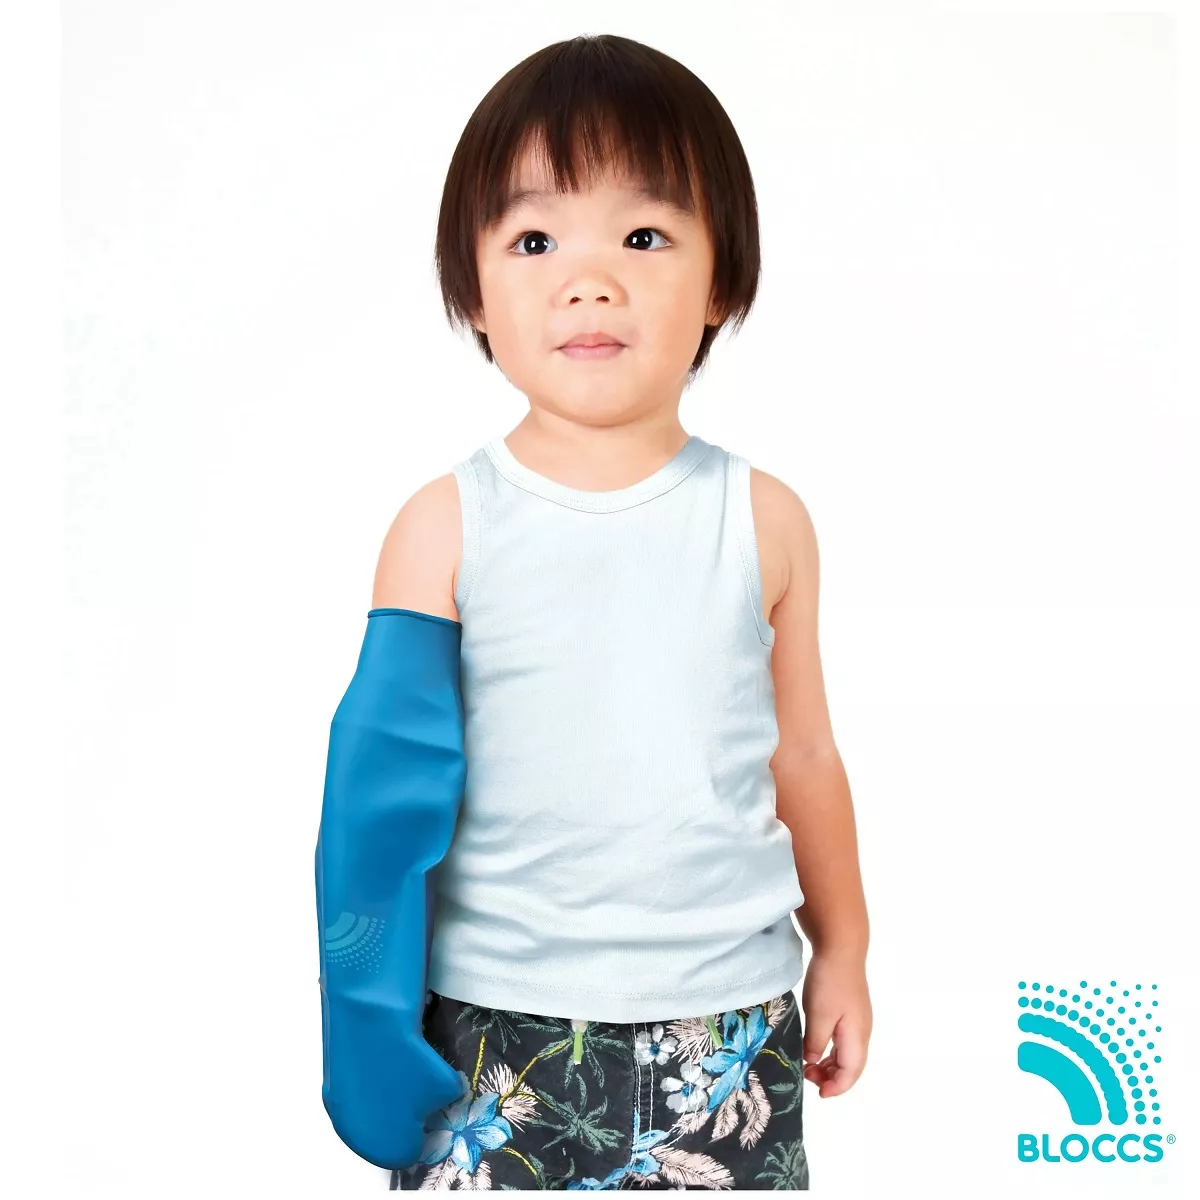 Protectie Bloccs pentru bandaj si ghips pentru copii,  pana la umar, marime M, circumferinta mainii 20-27cm, lungime protectie 53cm